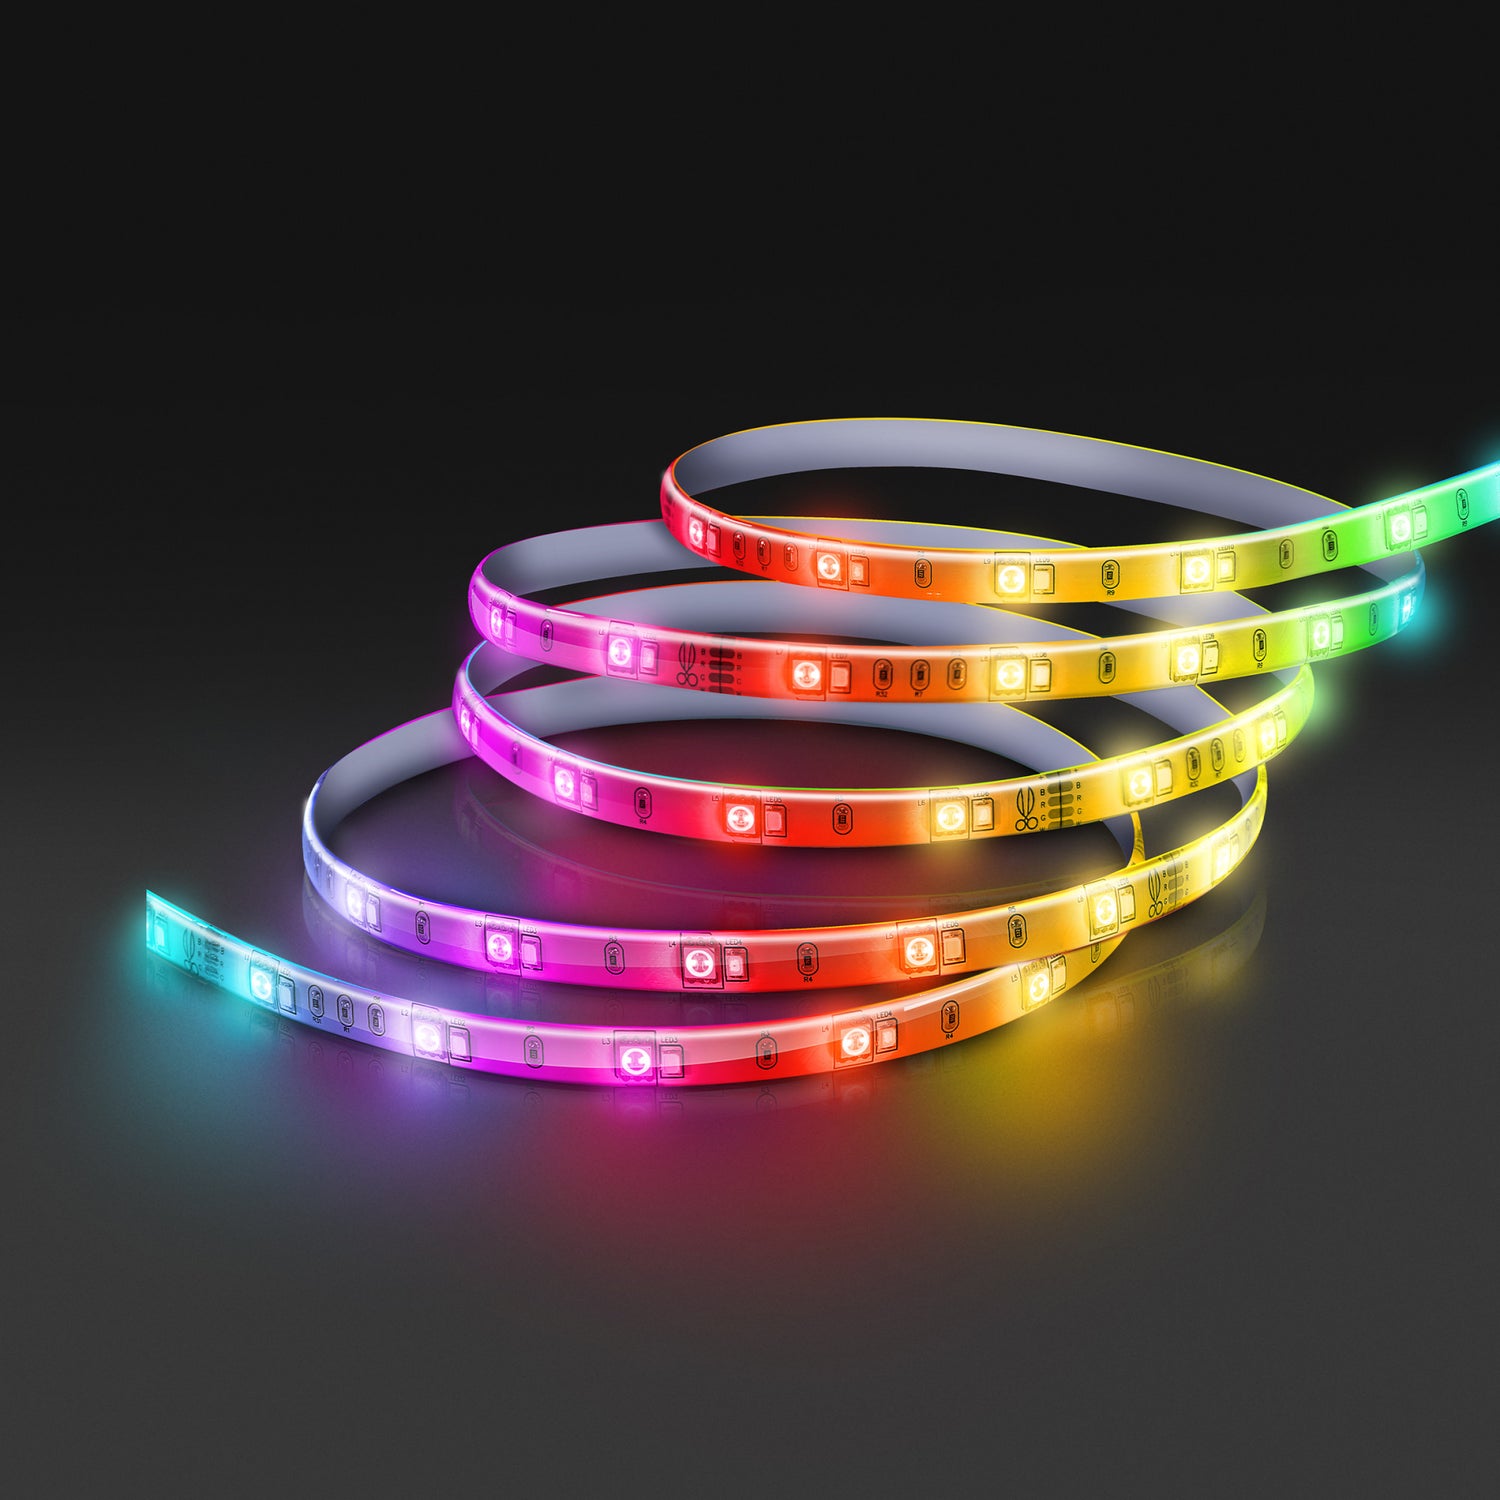 16 ft. Color Changing LED Smart Strip Light